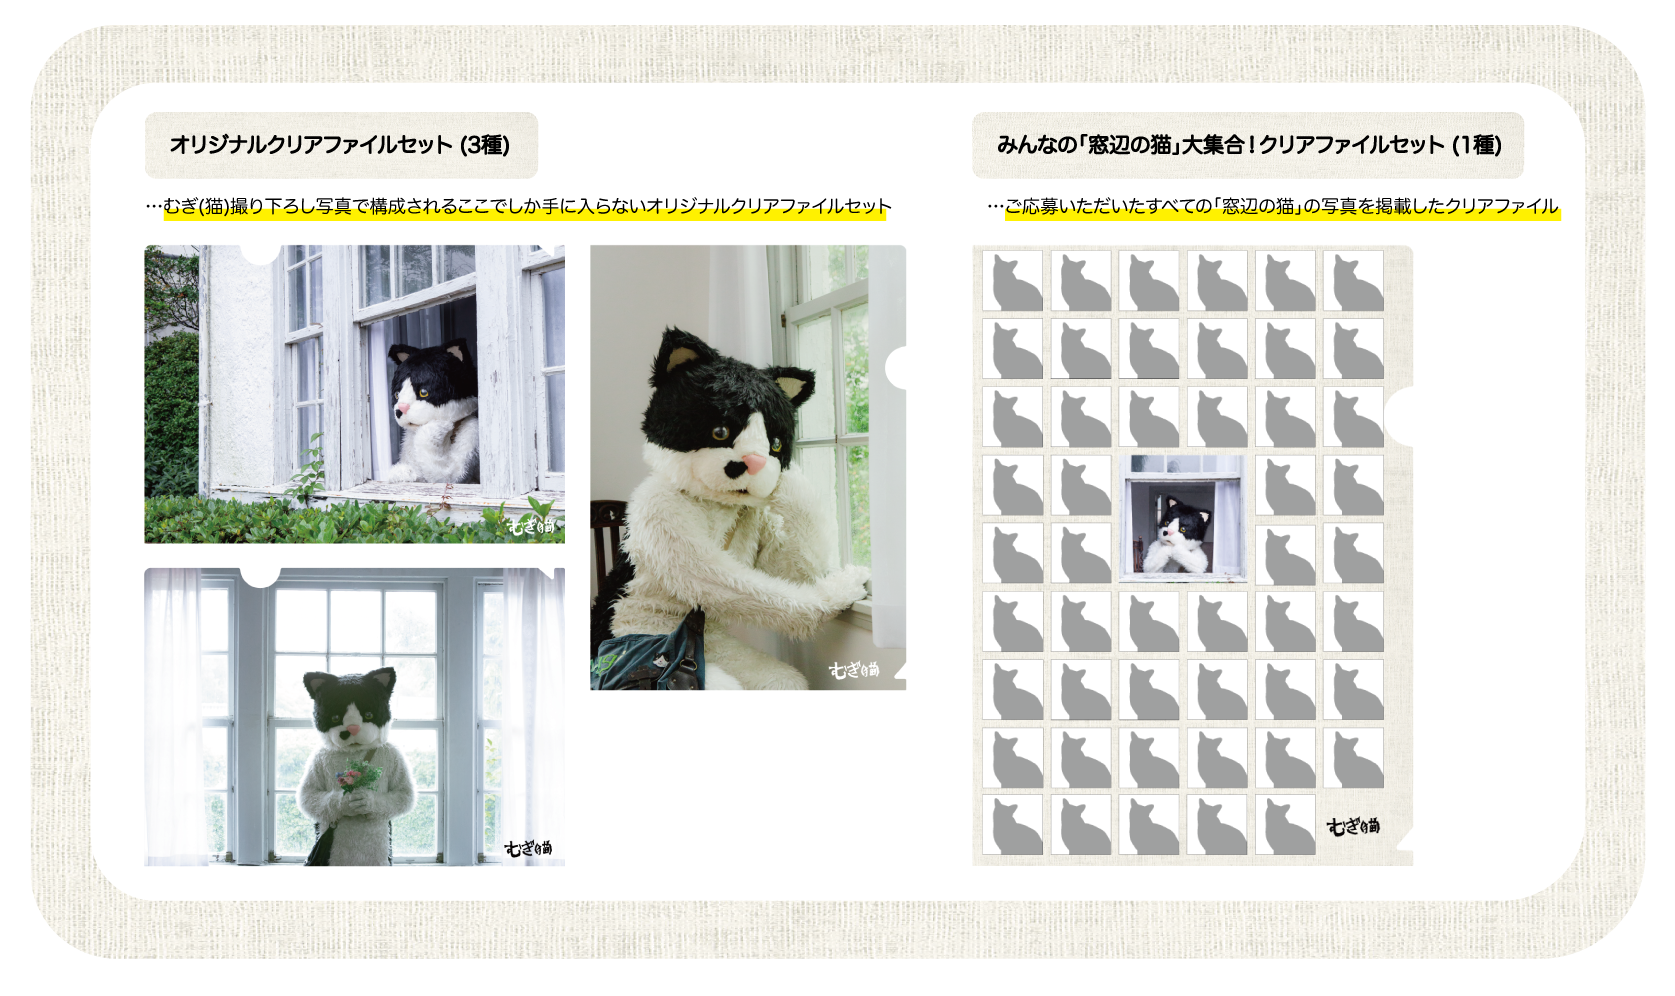 むぎ(猫) - みんなの「窓辺の猫」でミュージックビデオを作ろう！ | 音楽専門のクラウドファンディング【WIZY】ウィジー